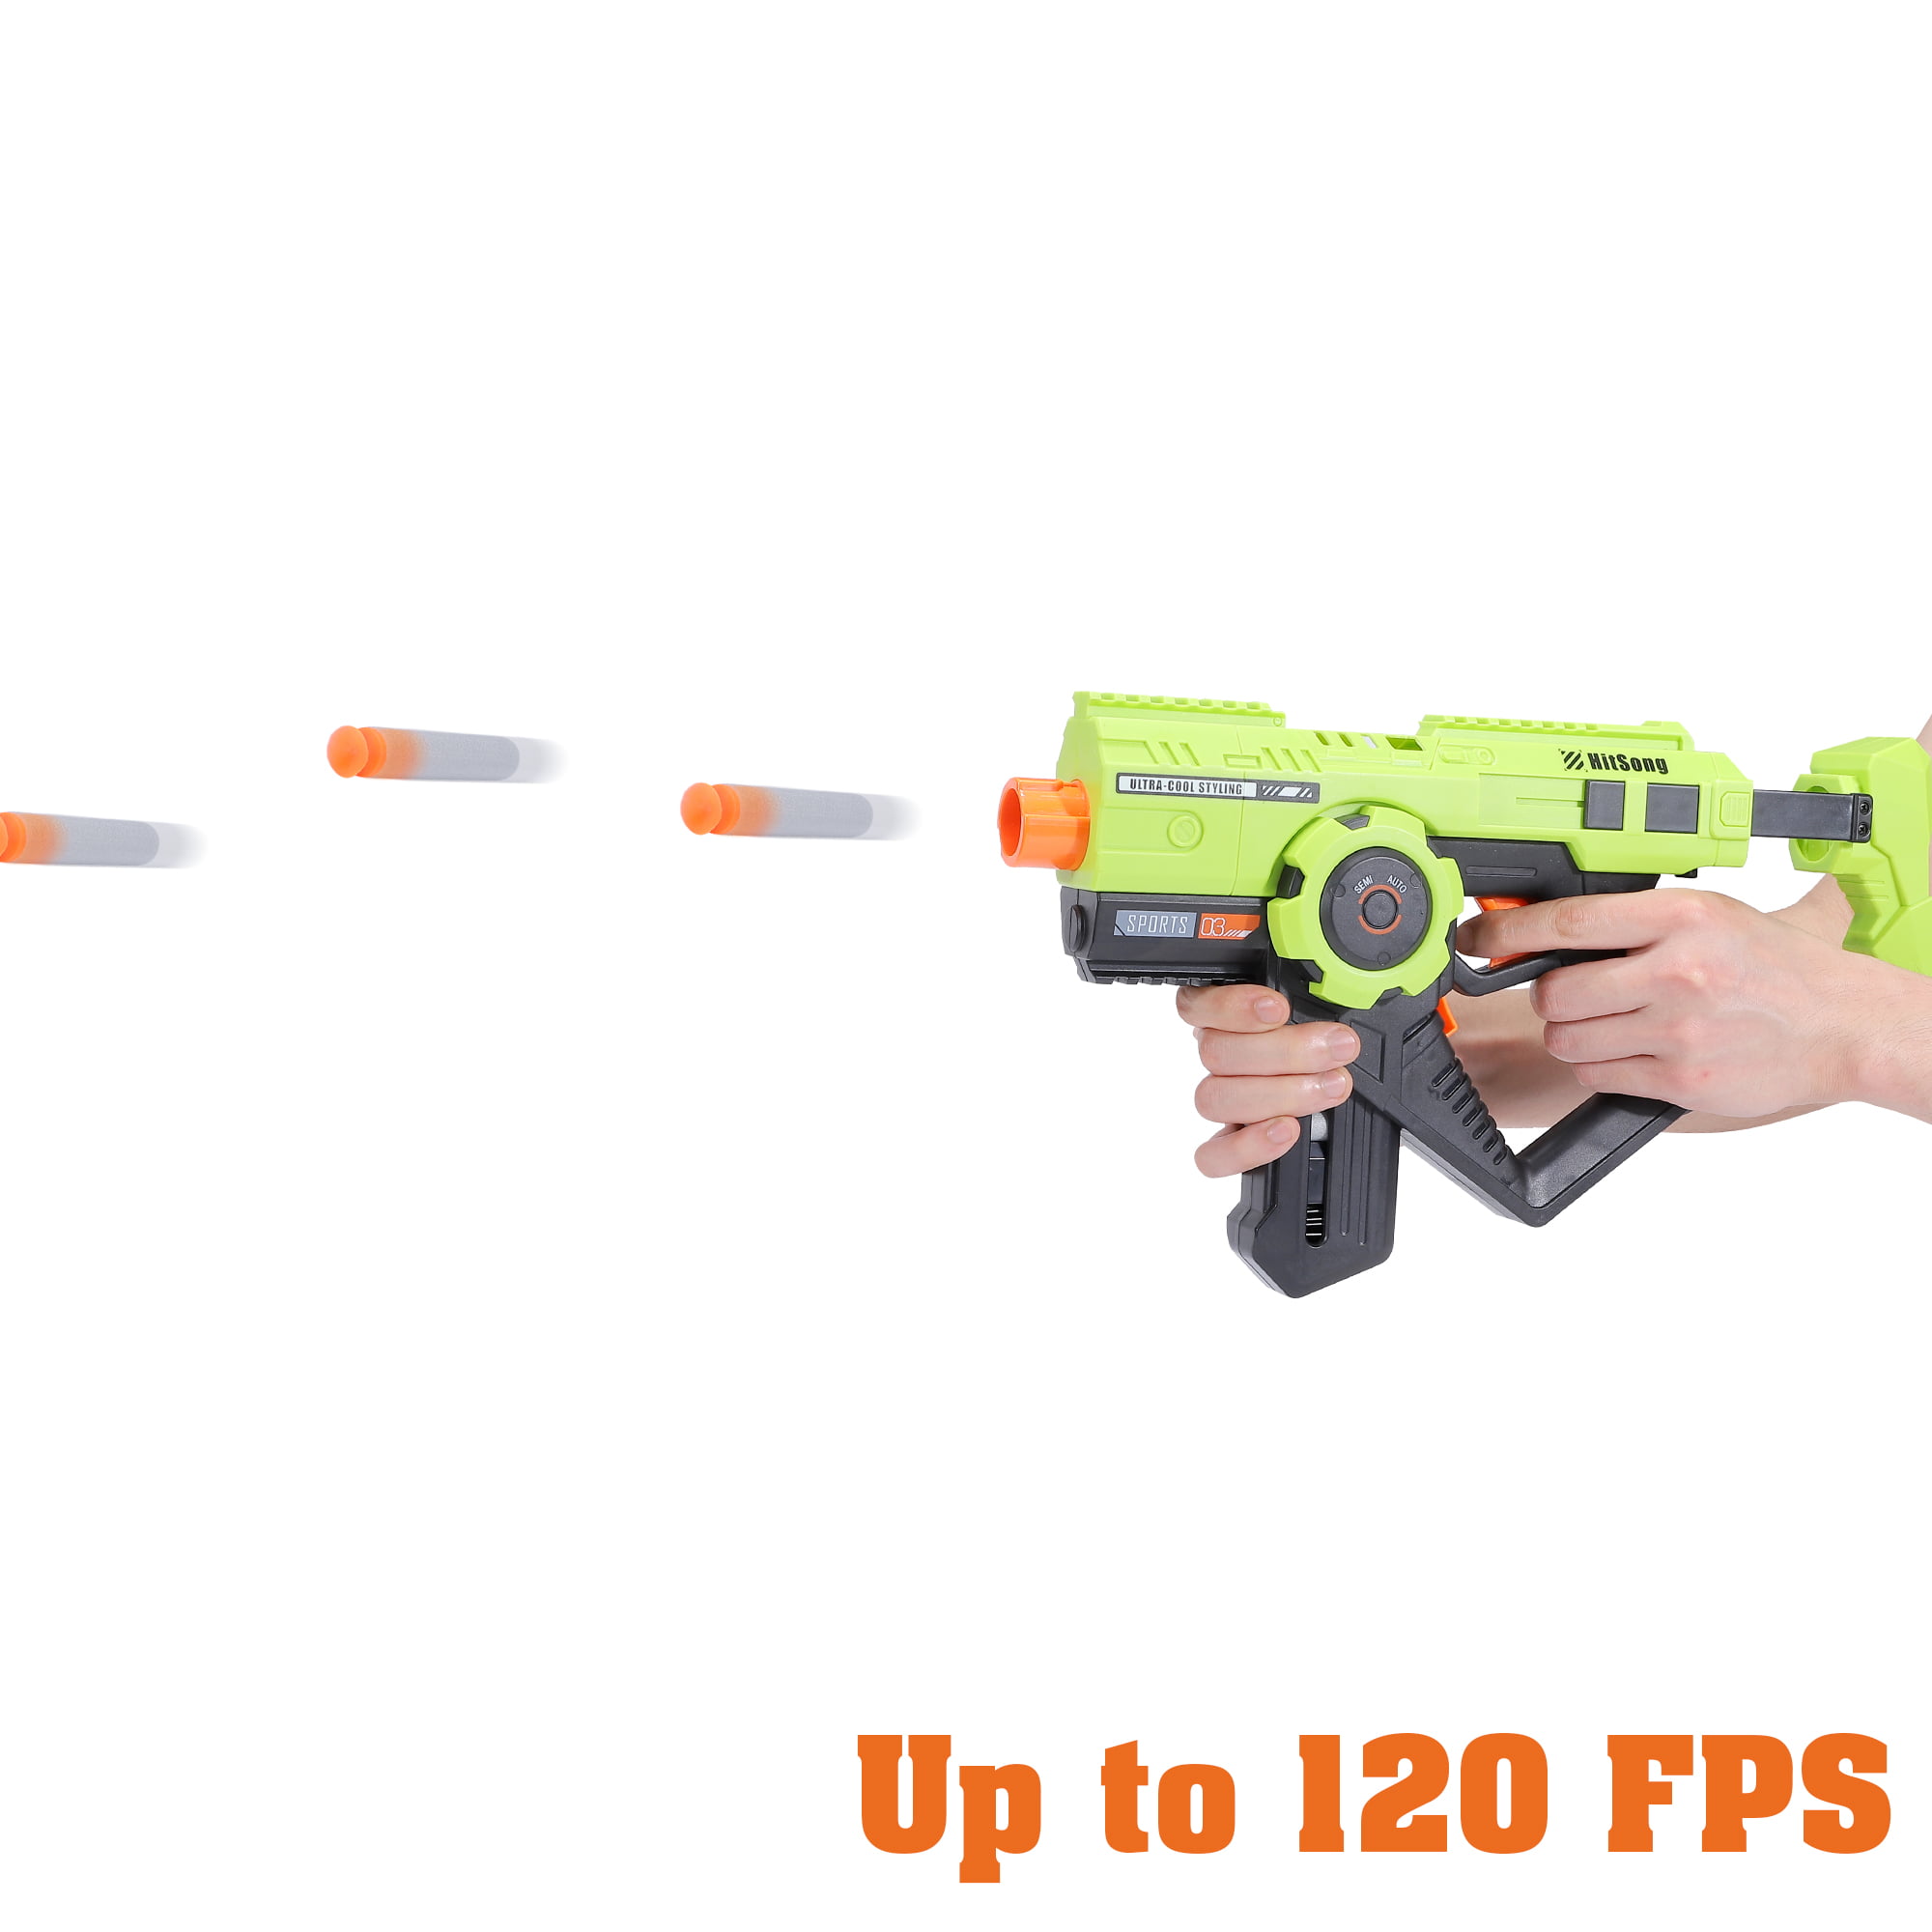 O novo popular jogo de tiro, Soft Bullet Gun, Plastic Toy Gun, está  equipado com balas e o repetido Blasters Gun Boy Toy Guntoy - China  Brinquedo e pistola de brinquedos preço